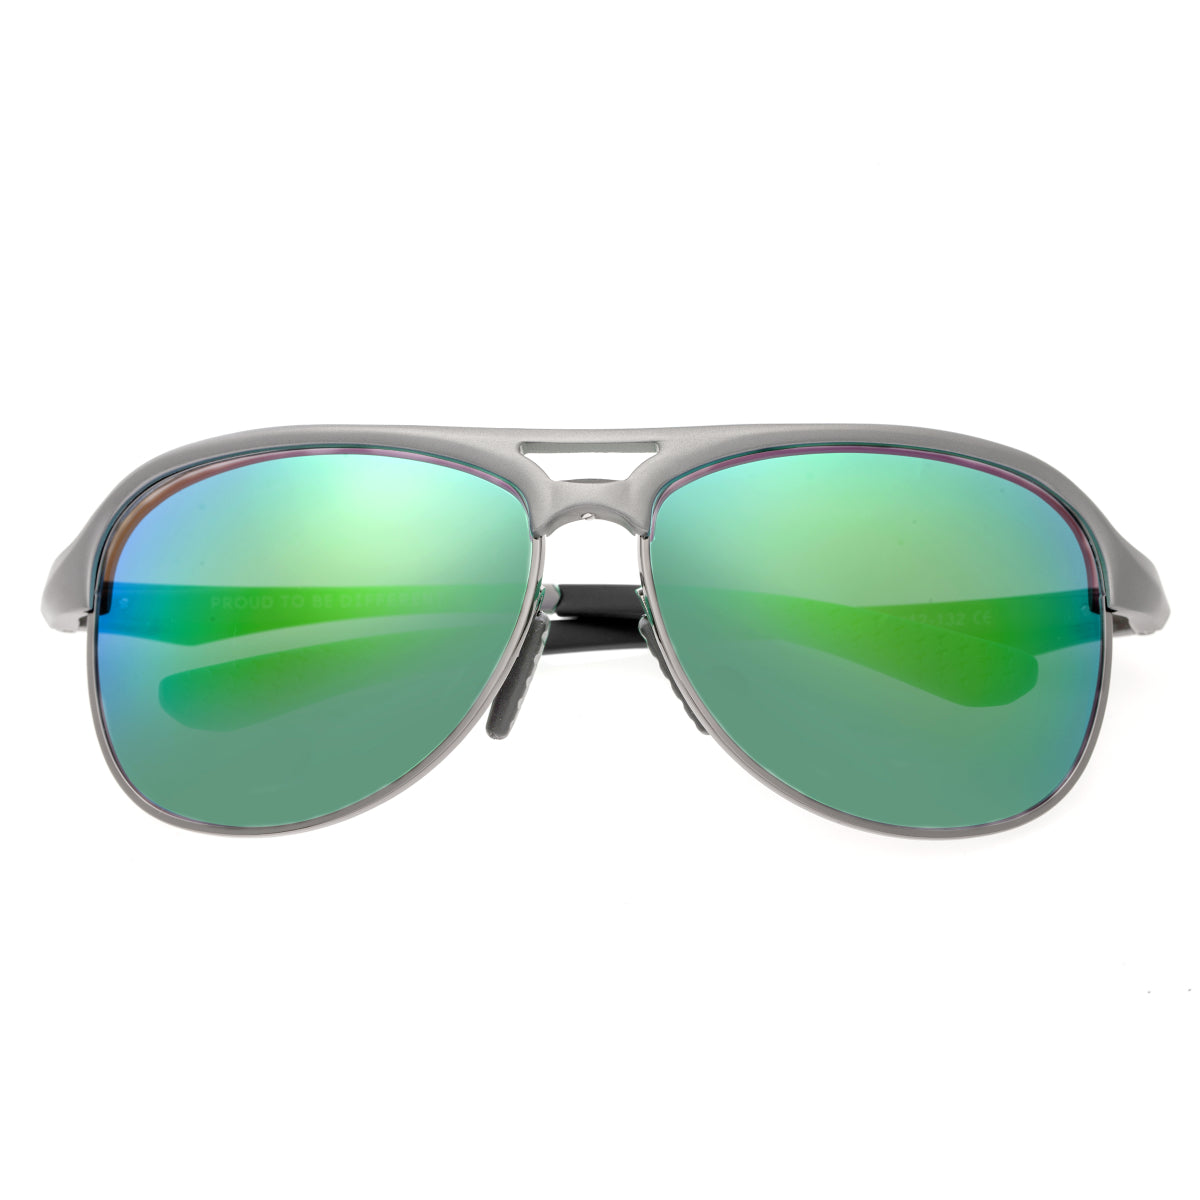 Breed Jupiter Aluminium Polarized Sunglasses - Silver/Blue-Green - BSG019SR